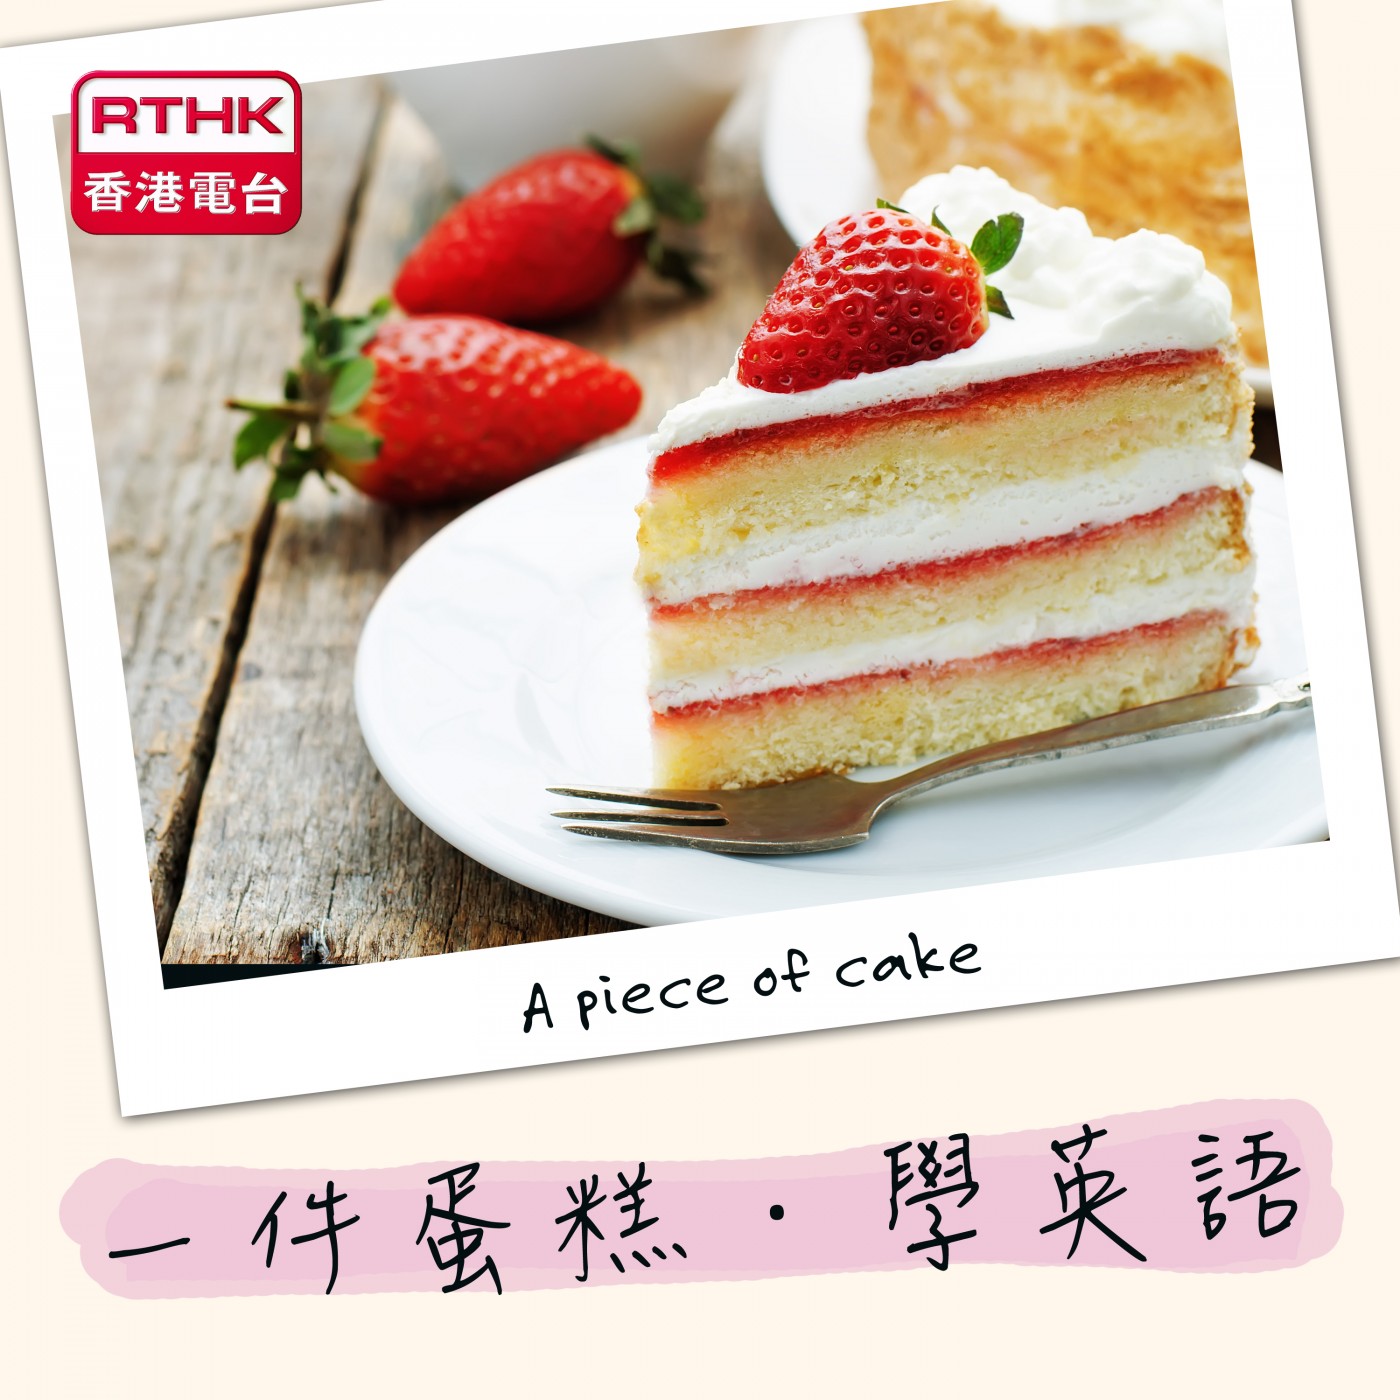 香港電台︰一件蛋糕•學英語